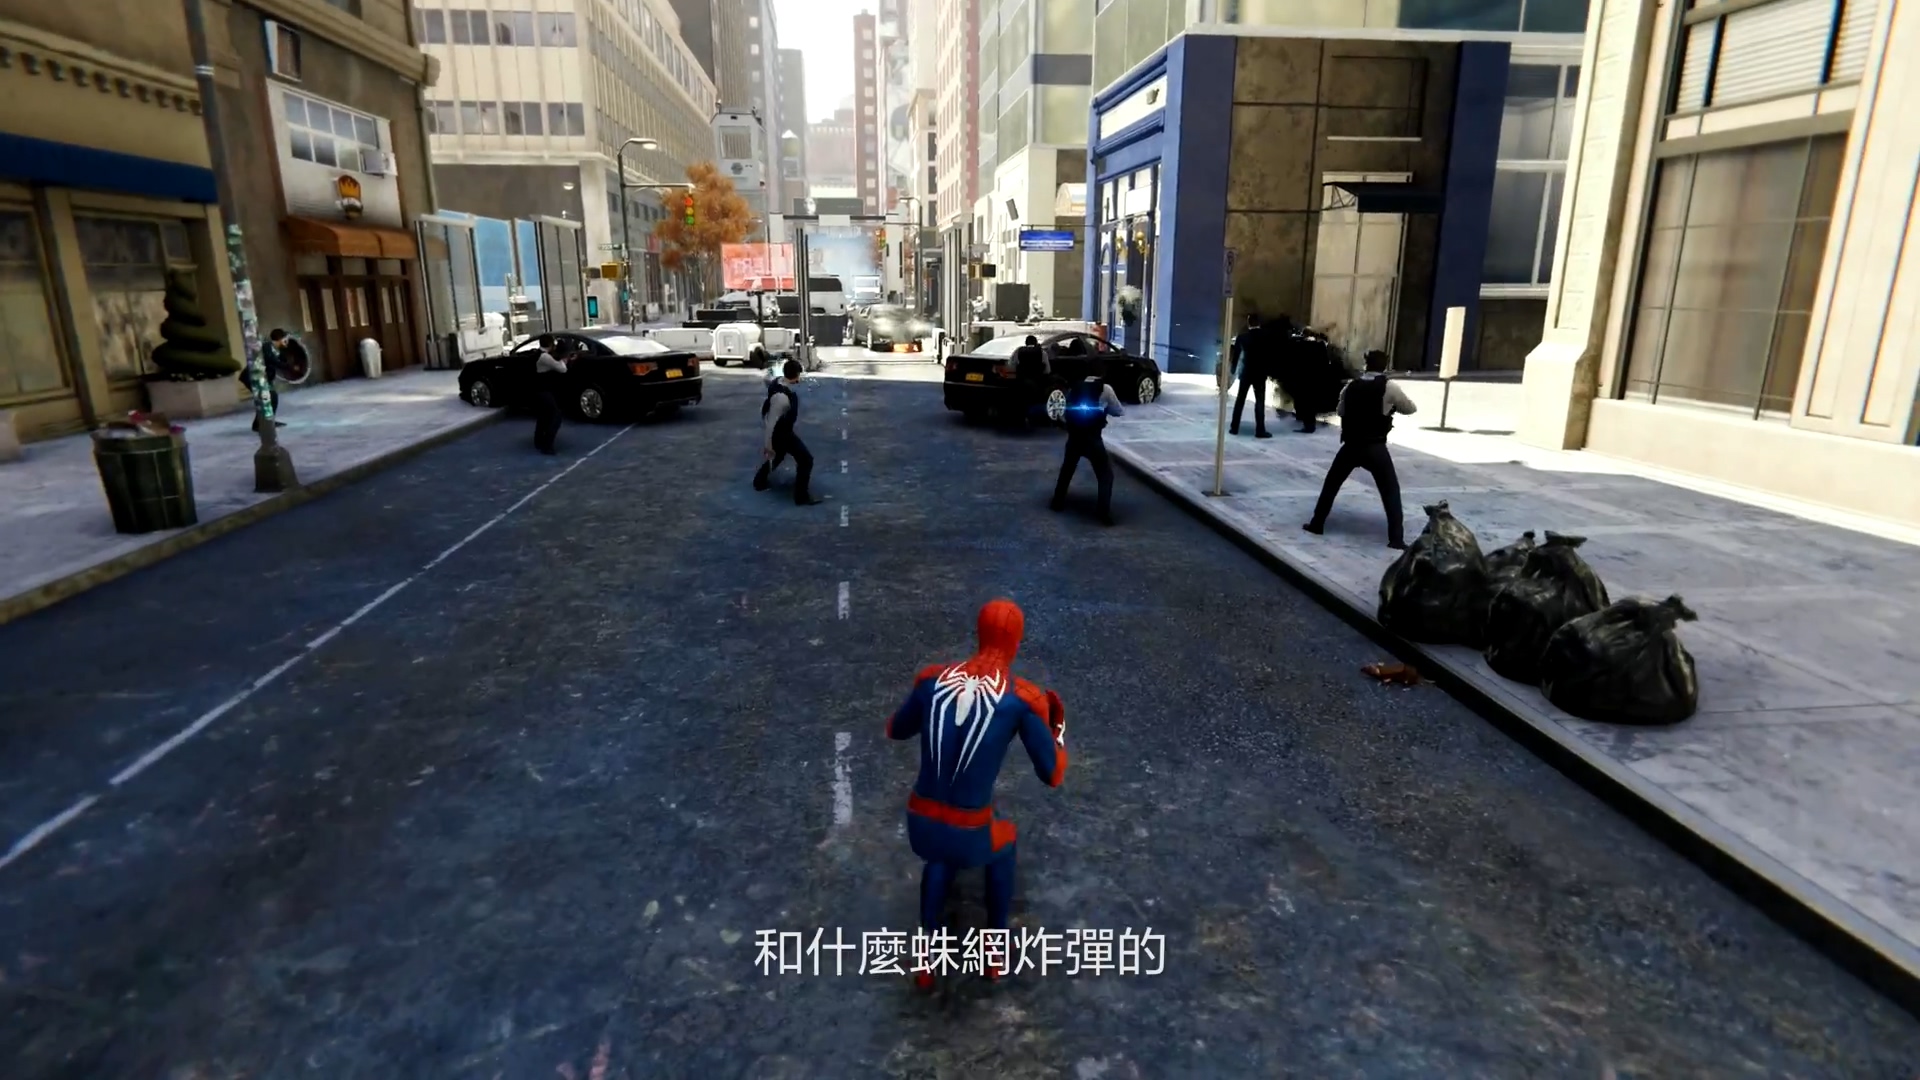 《蜘蛛侠》中文版宣传片第二弹 蜘蛛侠技能和装备曝光